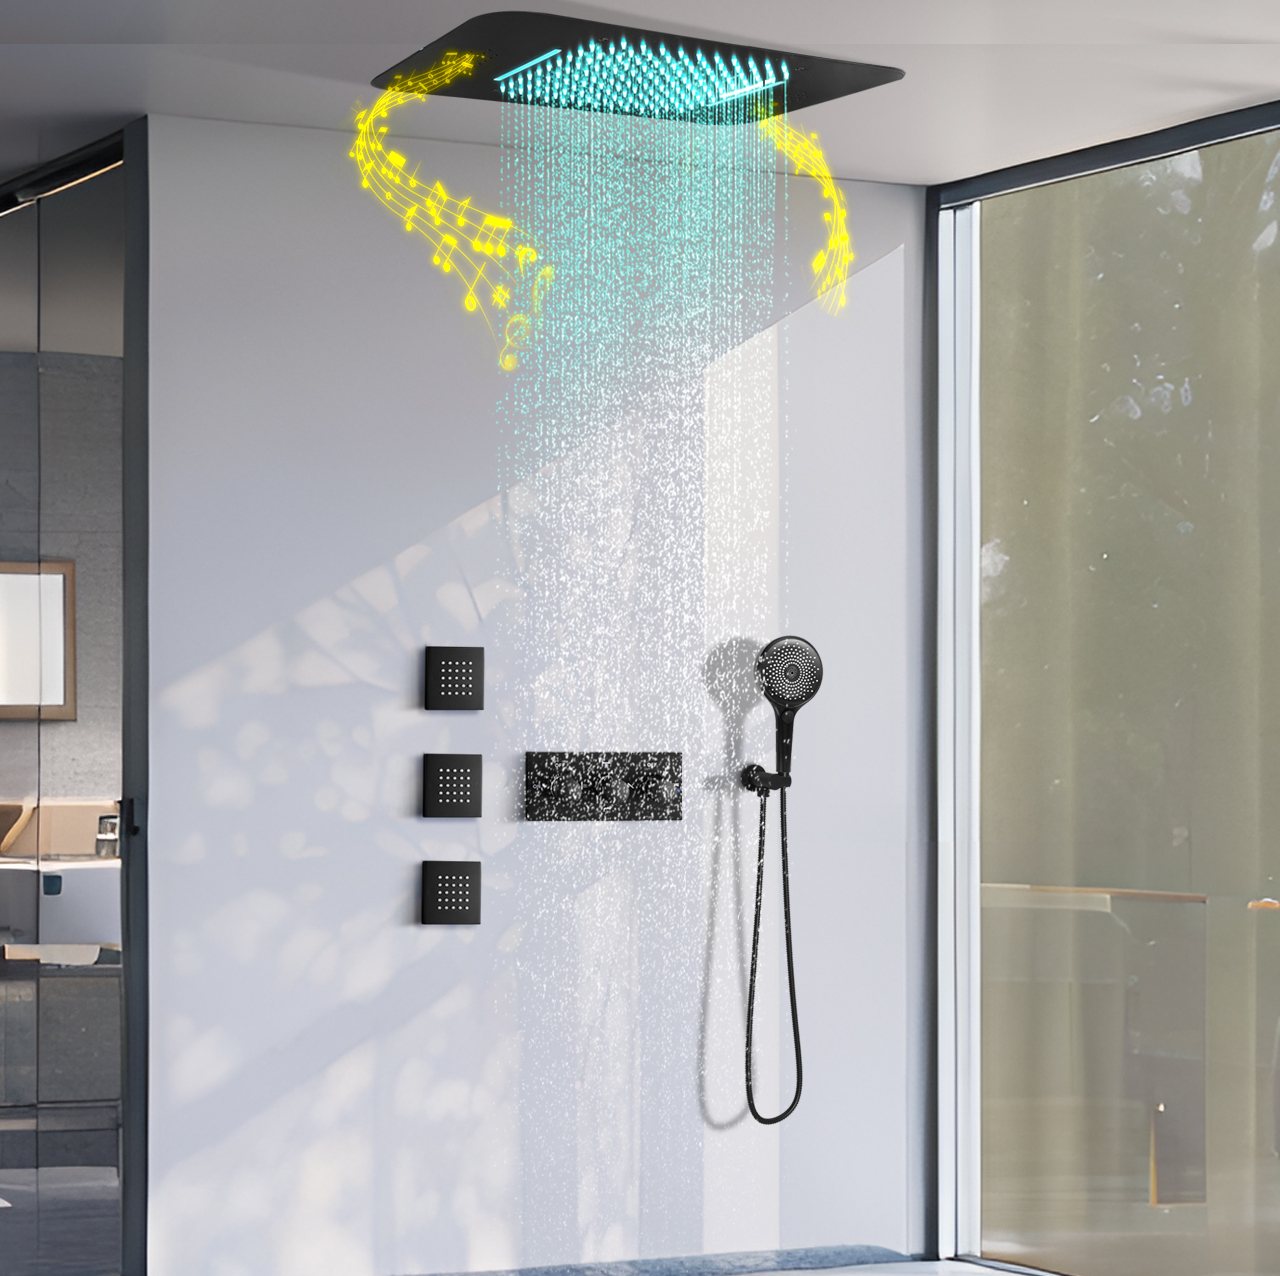 نظام شلال مياه الأمطار LED للحمام باللون الأسود الداكن ودرجة حرارة ثابتة ونظام صنبور مياه الدش المختلط طقم نفاث